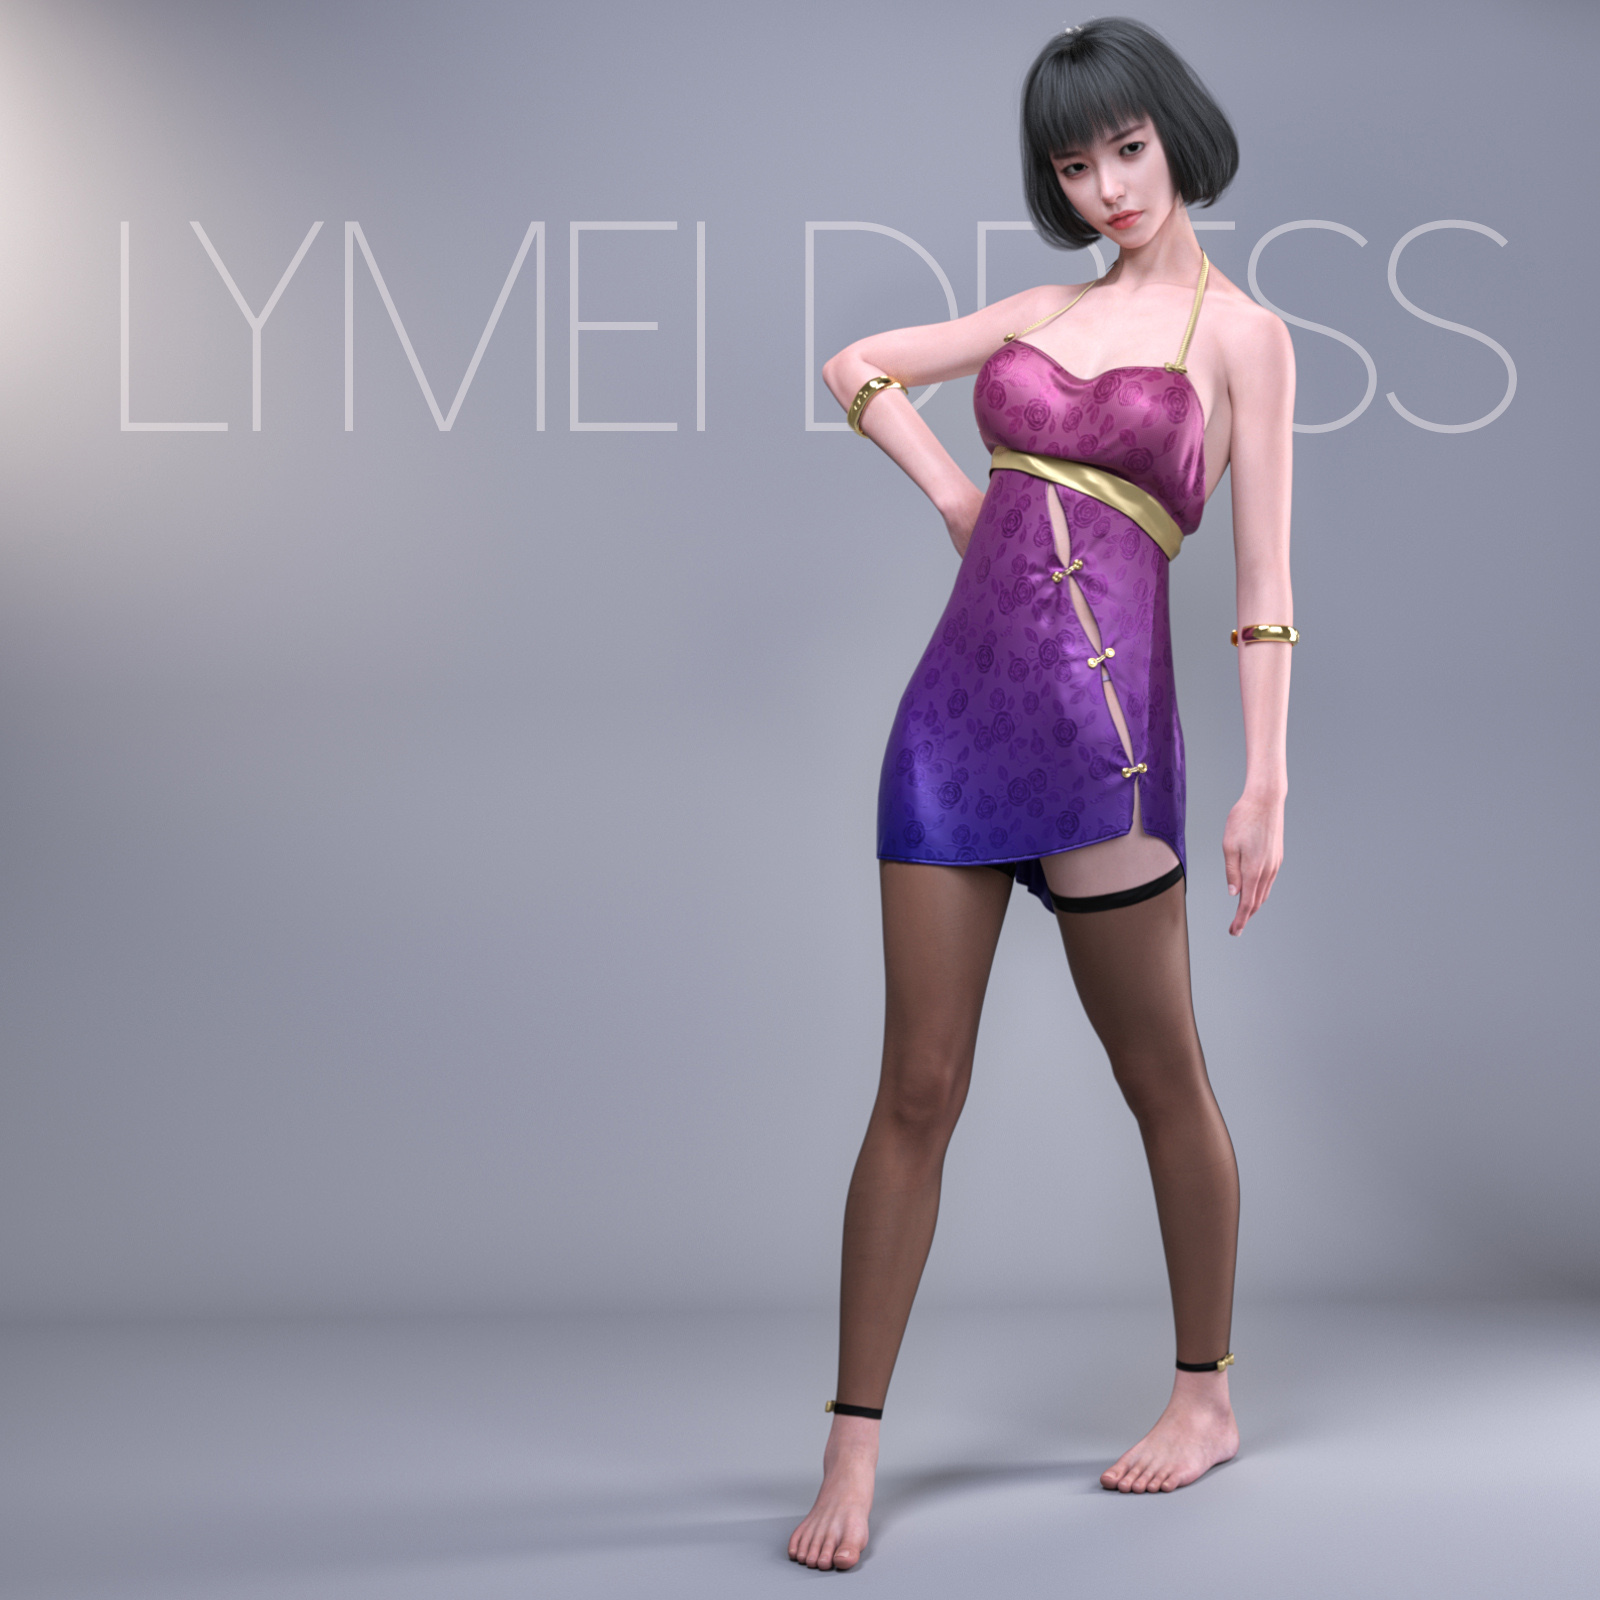 dForce Lymei Dress Set by: devianttuna13, 3D Models by Daz 3D